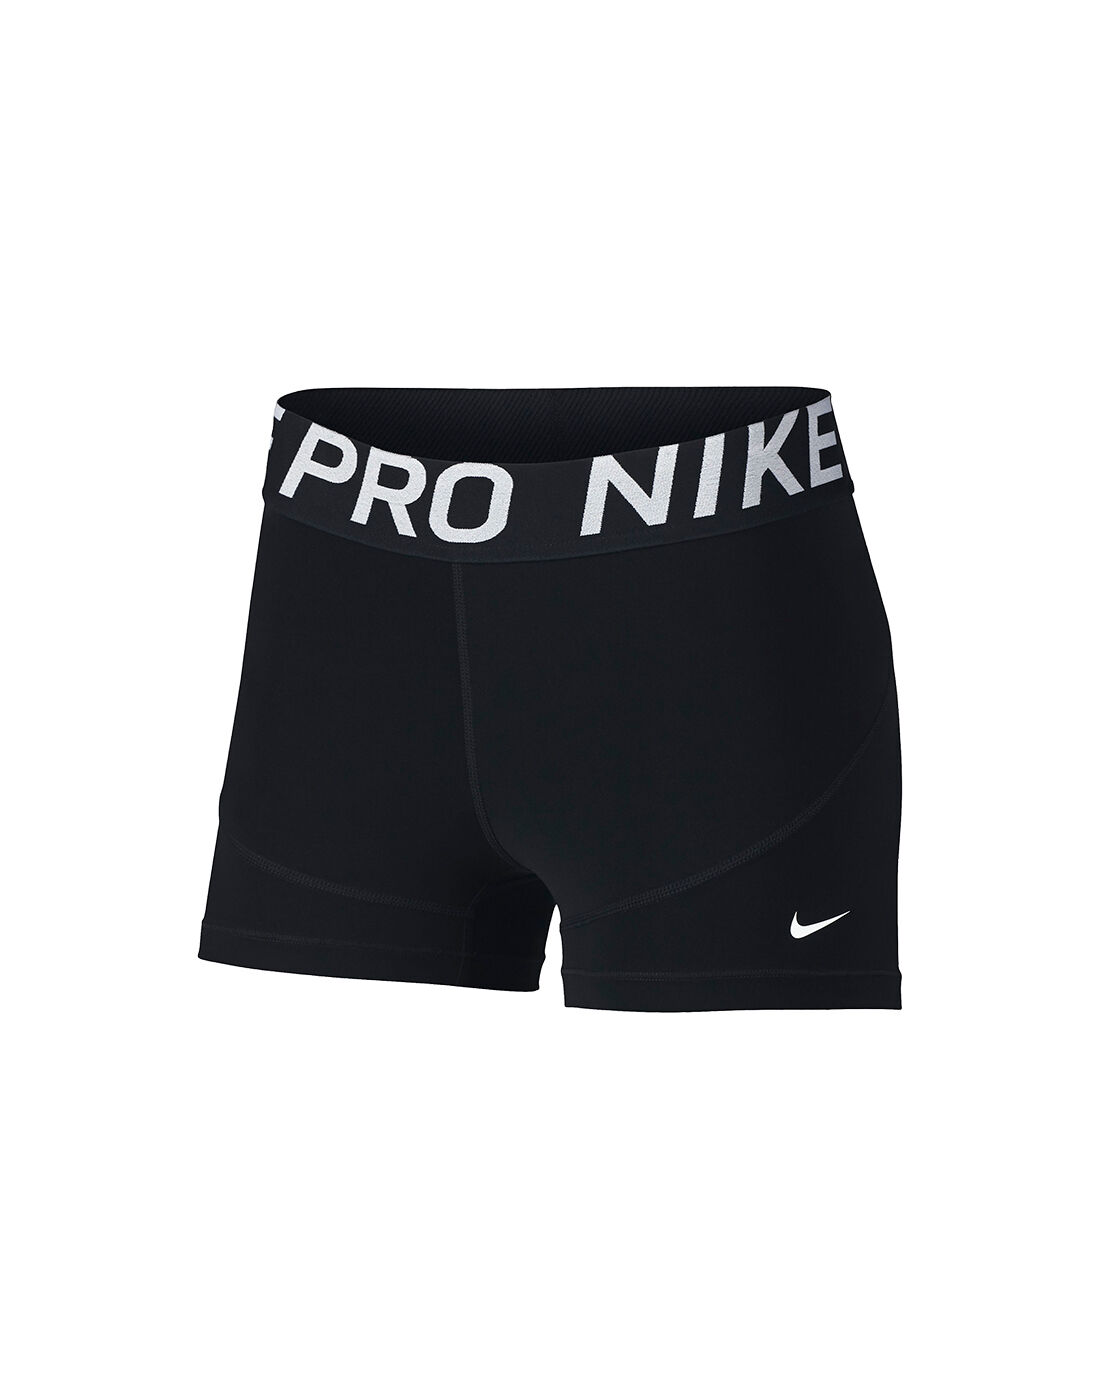 size small nike pro shorts